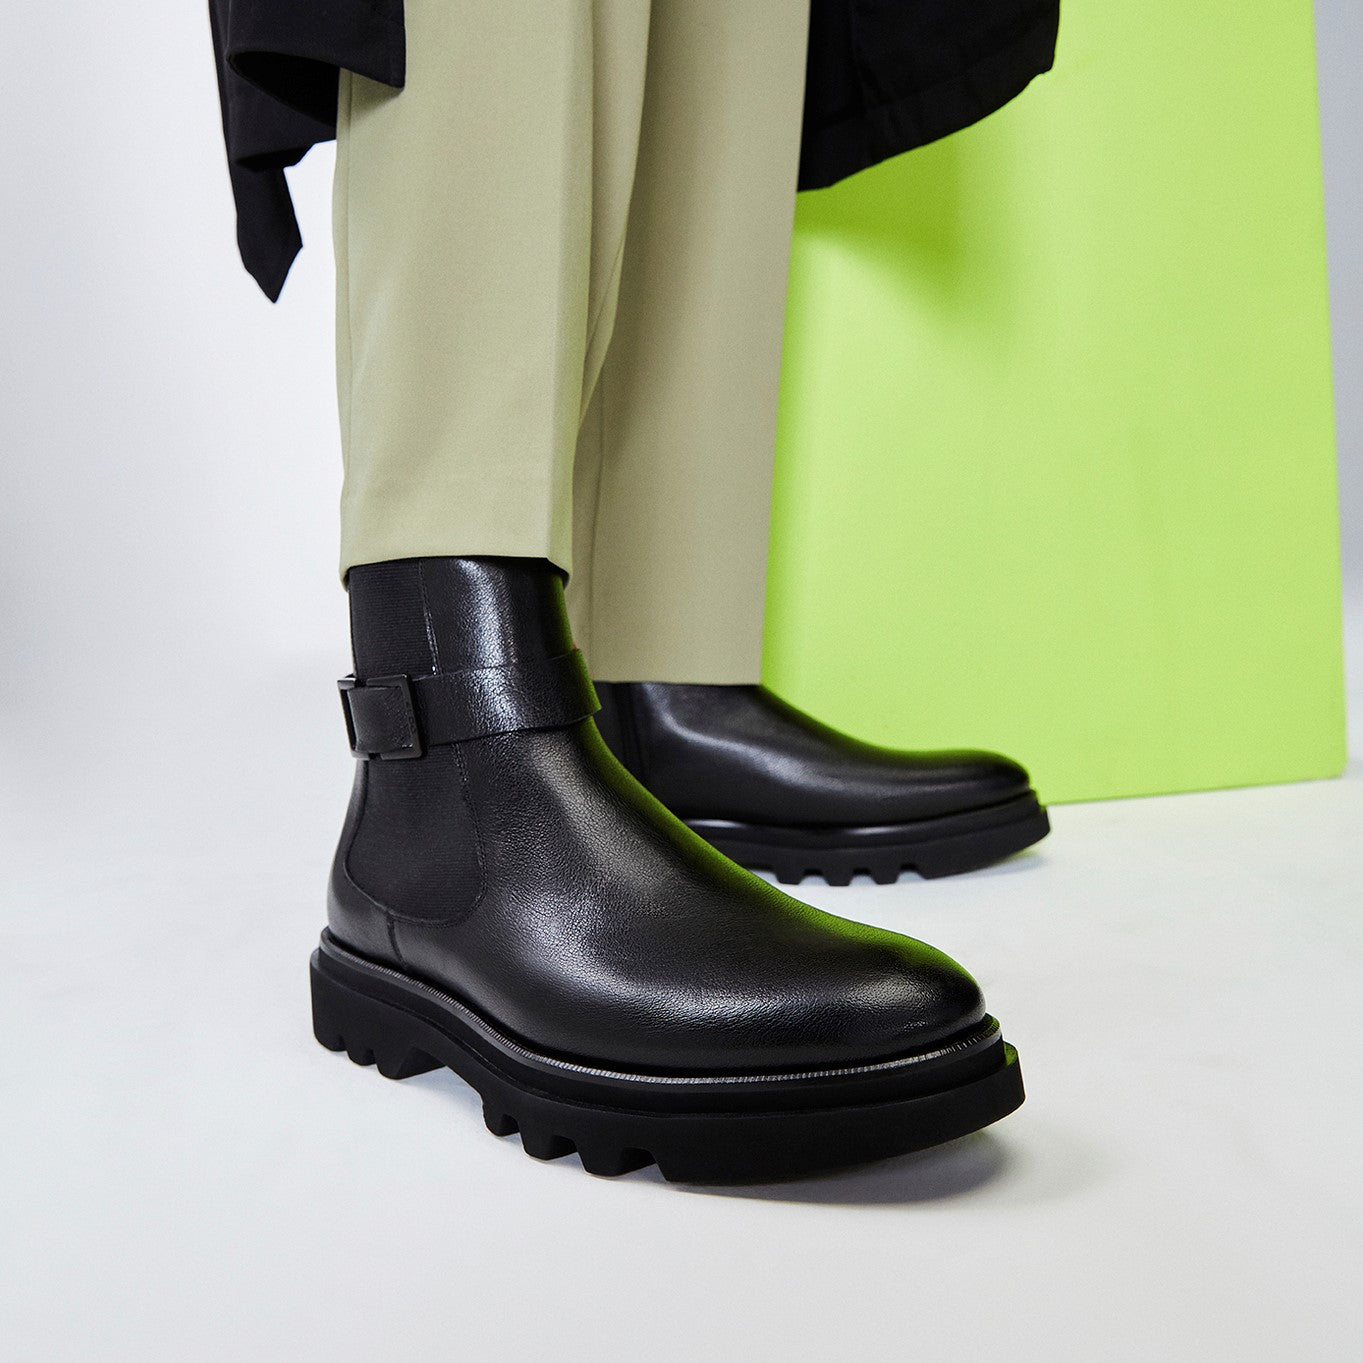 Aldo Men's Pillow Walk Comfortable Ankle Verdi (Black) – Shoes